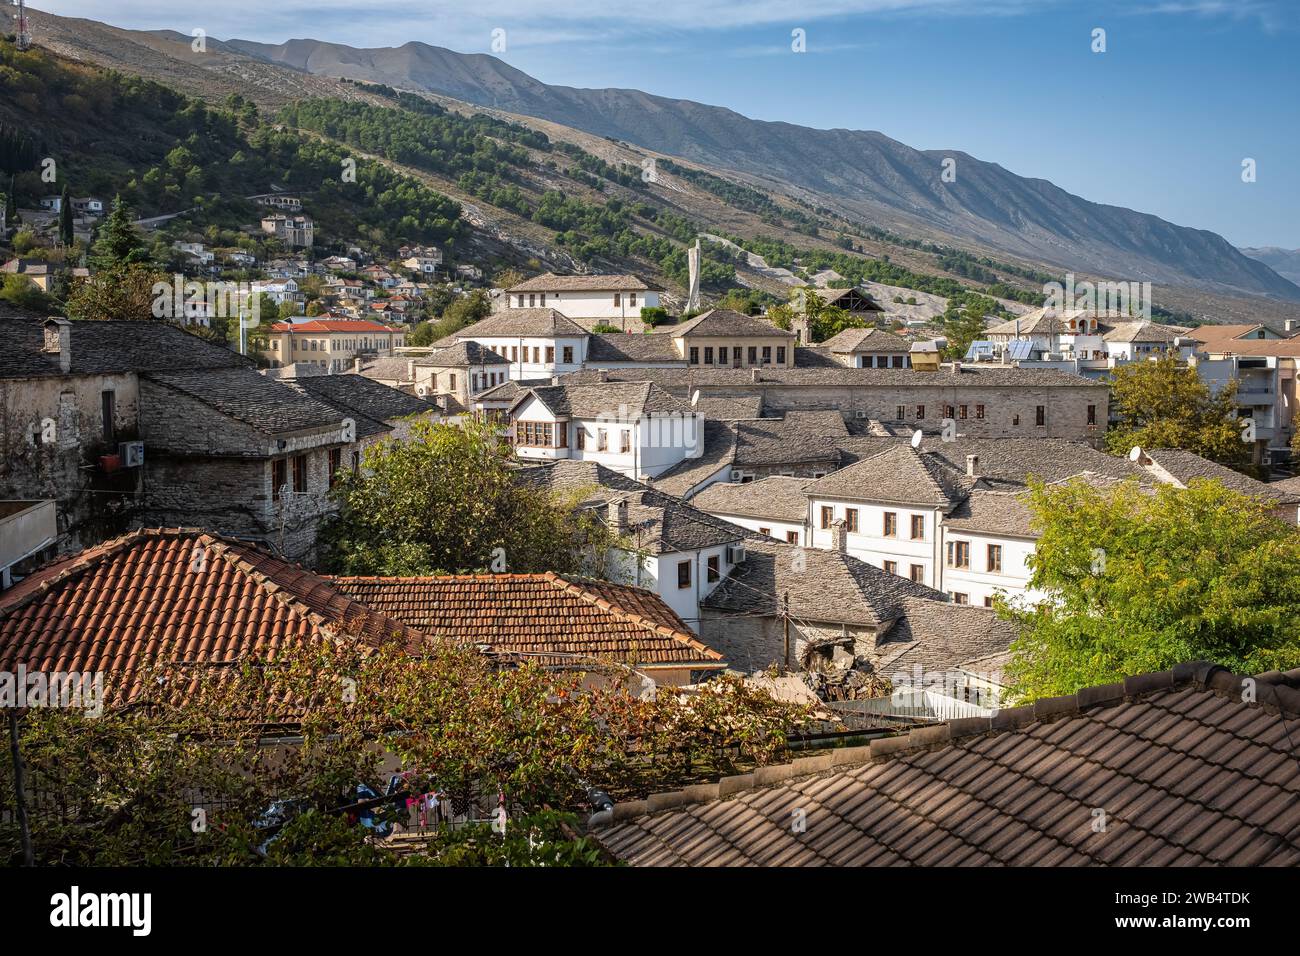 Stadtbild der Altstadt Gjirokaster Altstadt, Albanien. Alte ottomanische Häuser in Gjirokaster. Reisefoto, niemand, Kopierraum für Text Stockfoto